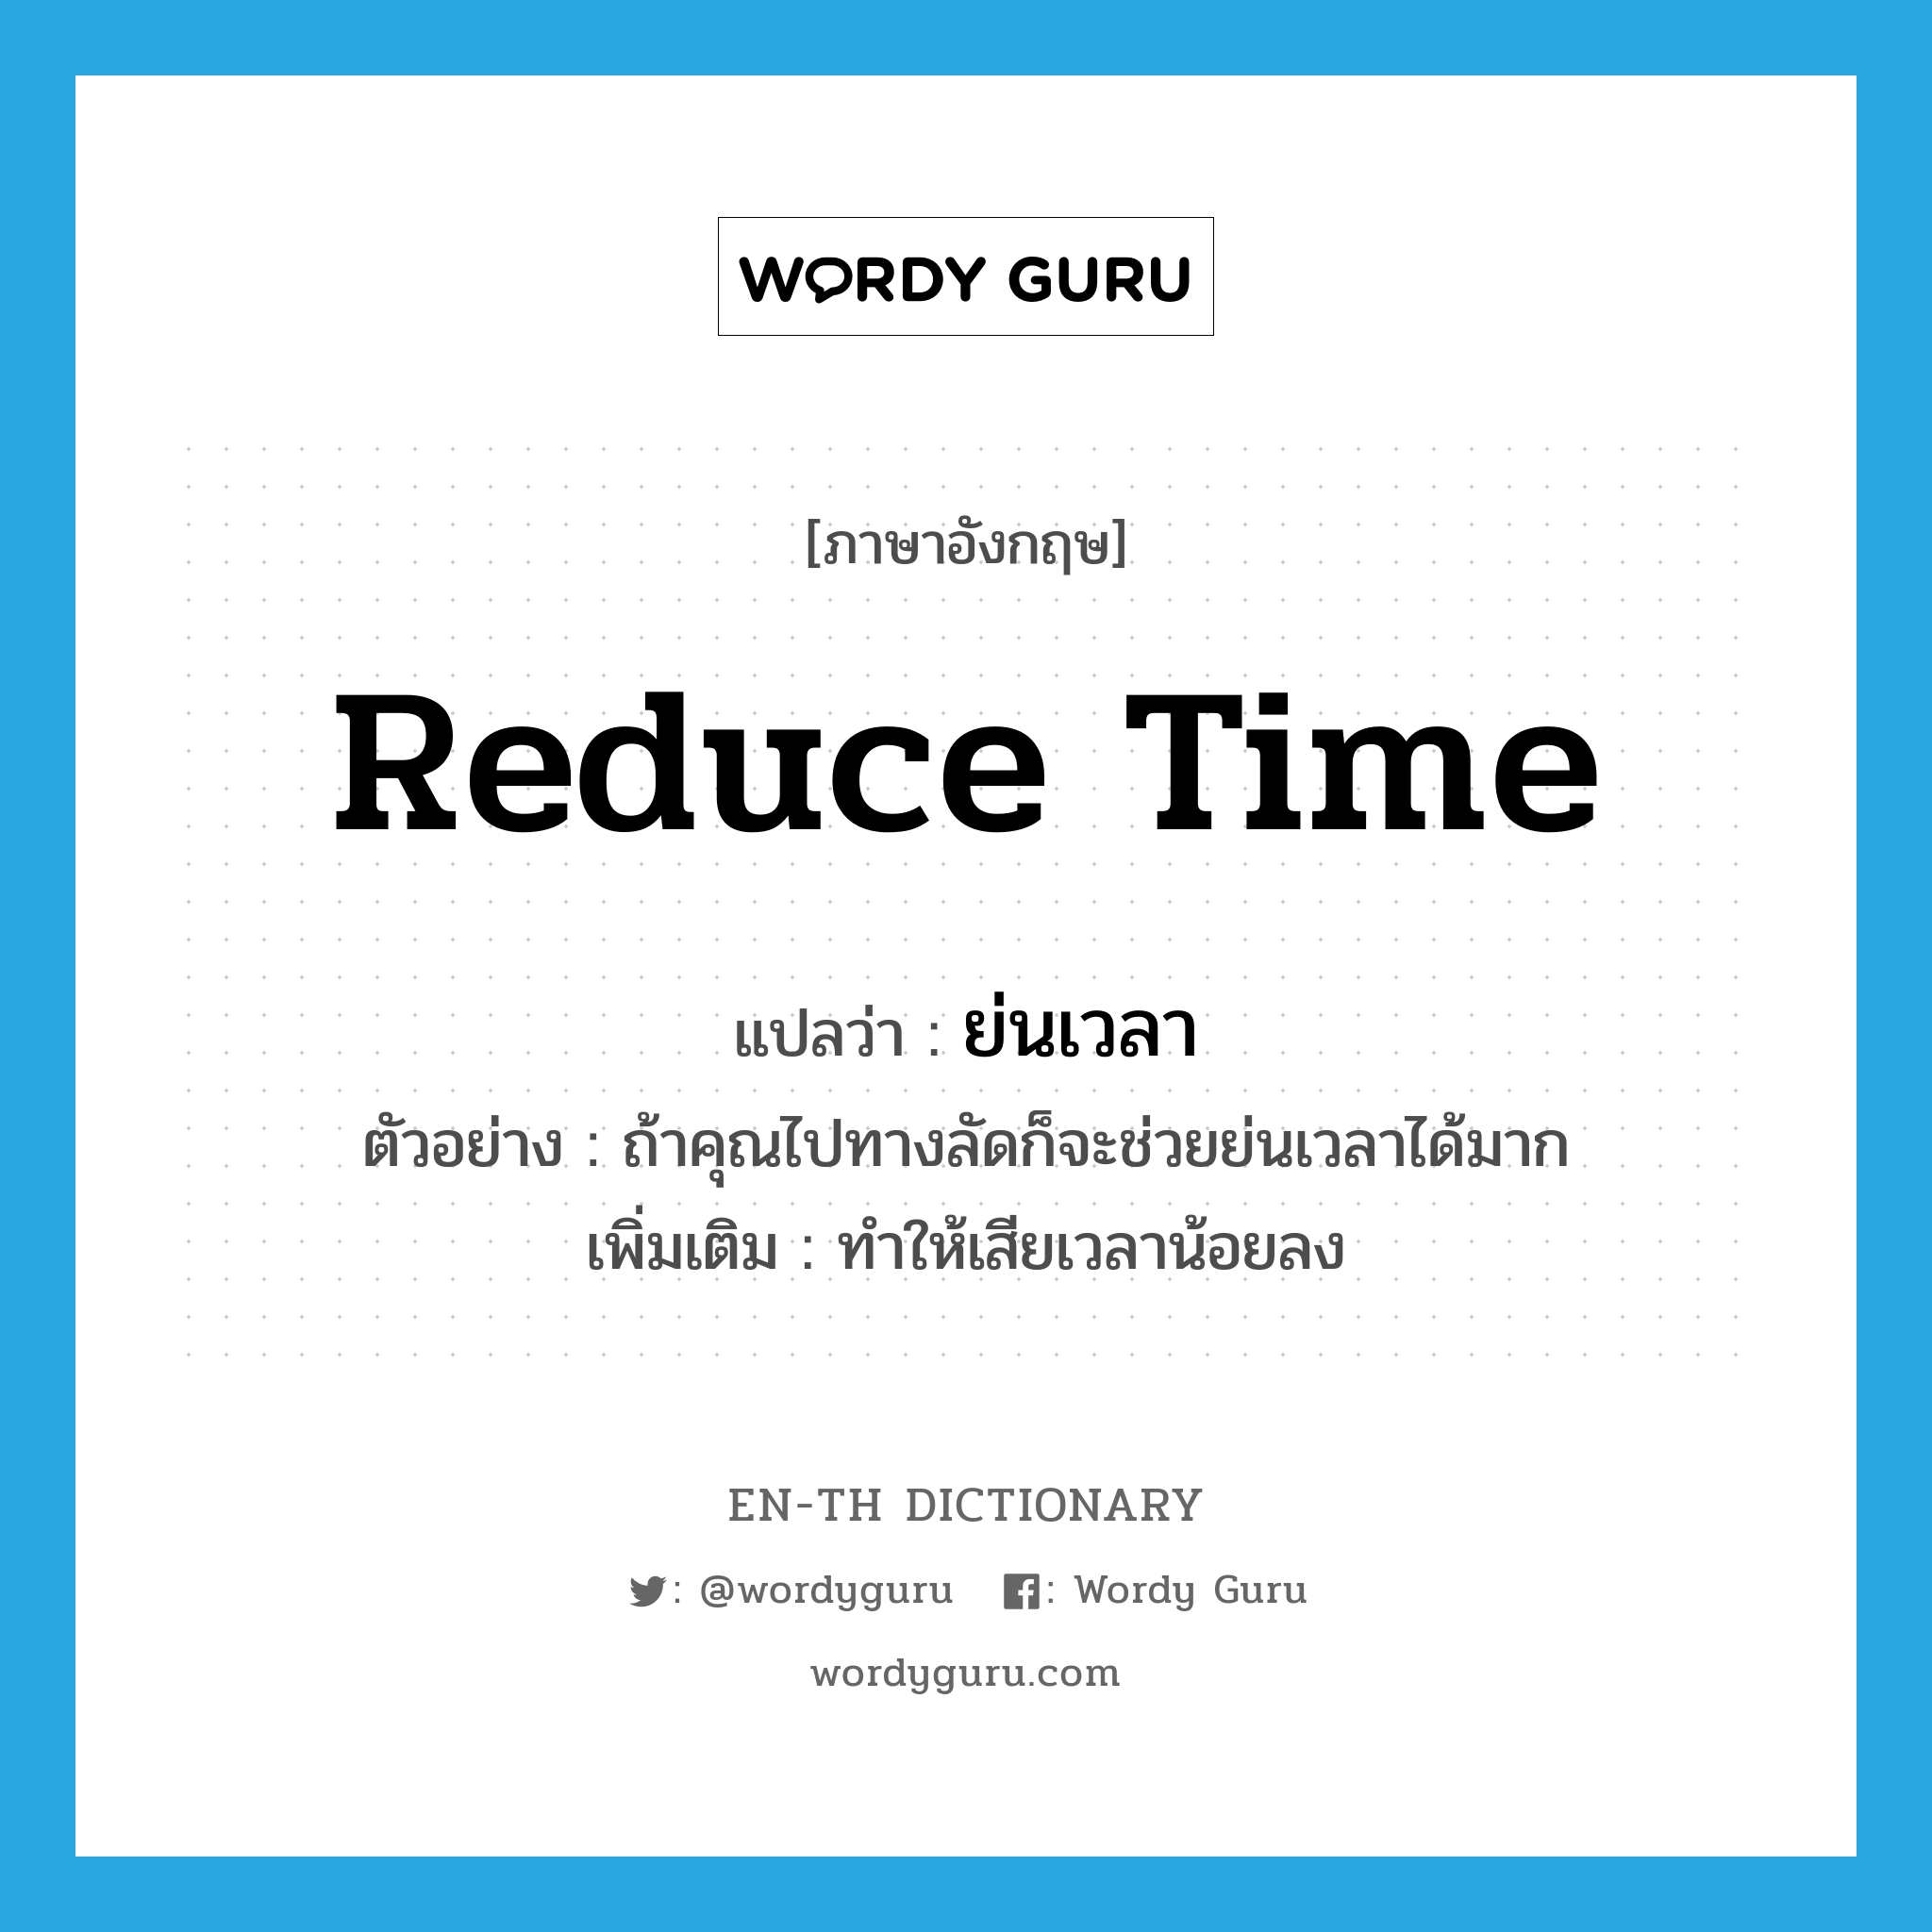 reduce time แปลว่า?, คำศัพท์ภาษาอังกฤษ reduce time แปลว่า ย่นเวลา ประเภท V ตัวอย่าง ถ้าคุณไปทางลัดก็จะช่วยย่นเวลาได้มาก เพิ่มเติม ทำให้เสียเวลาน้อยลง หมวด V